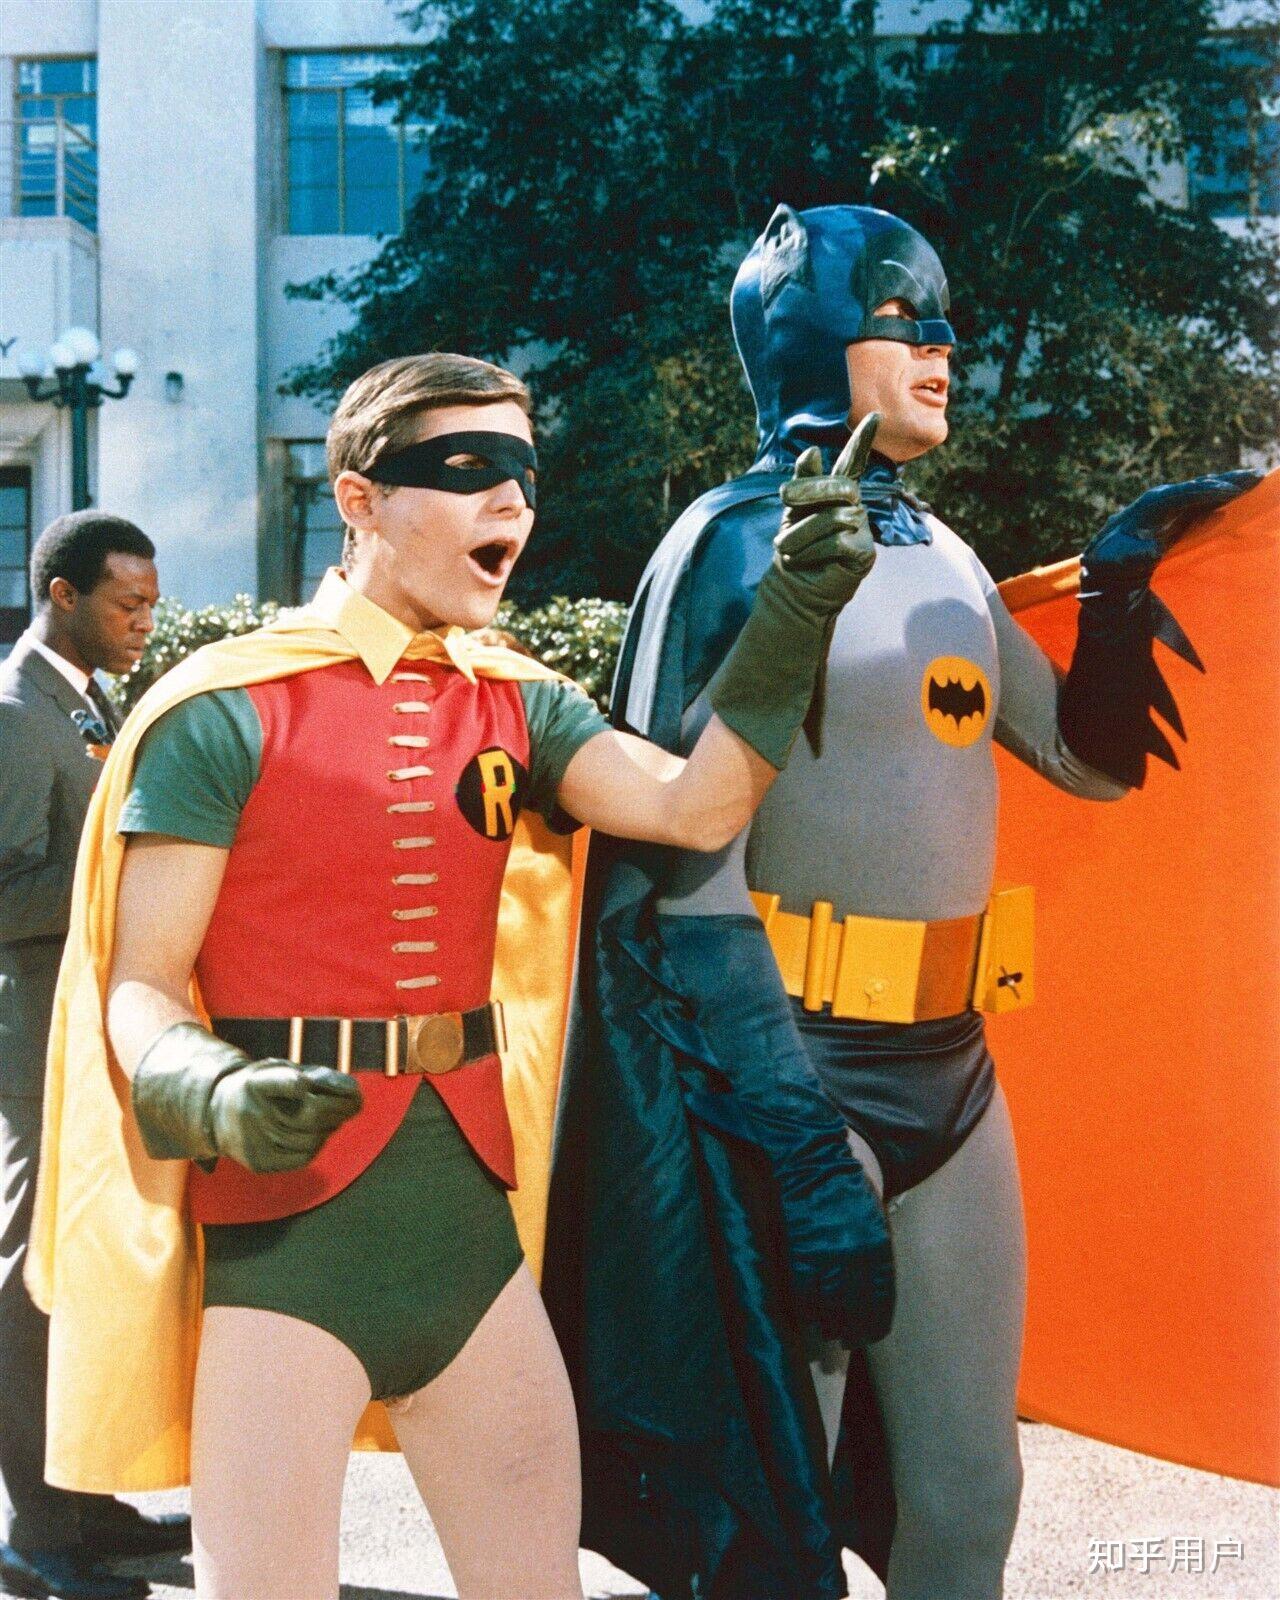 为什么有人认为诺兰蝙蝠侠不是超英片而是警匪片? 